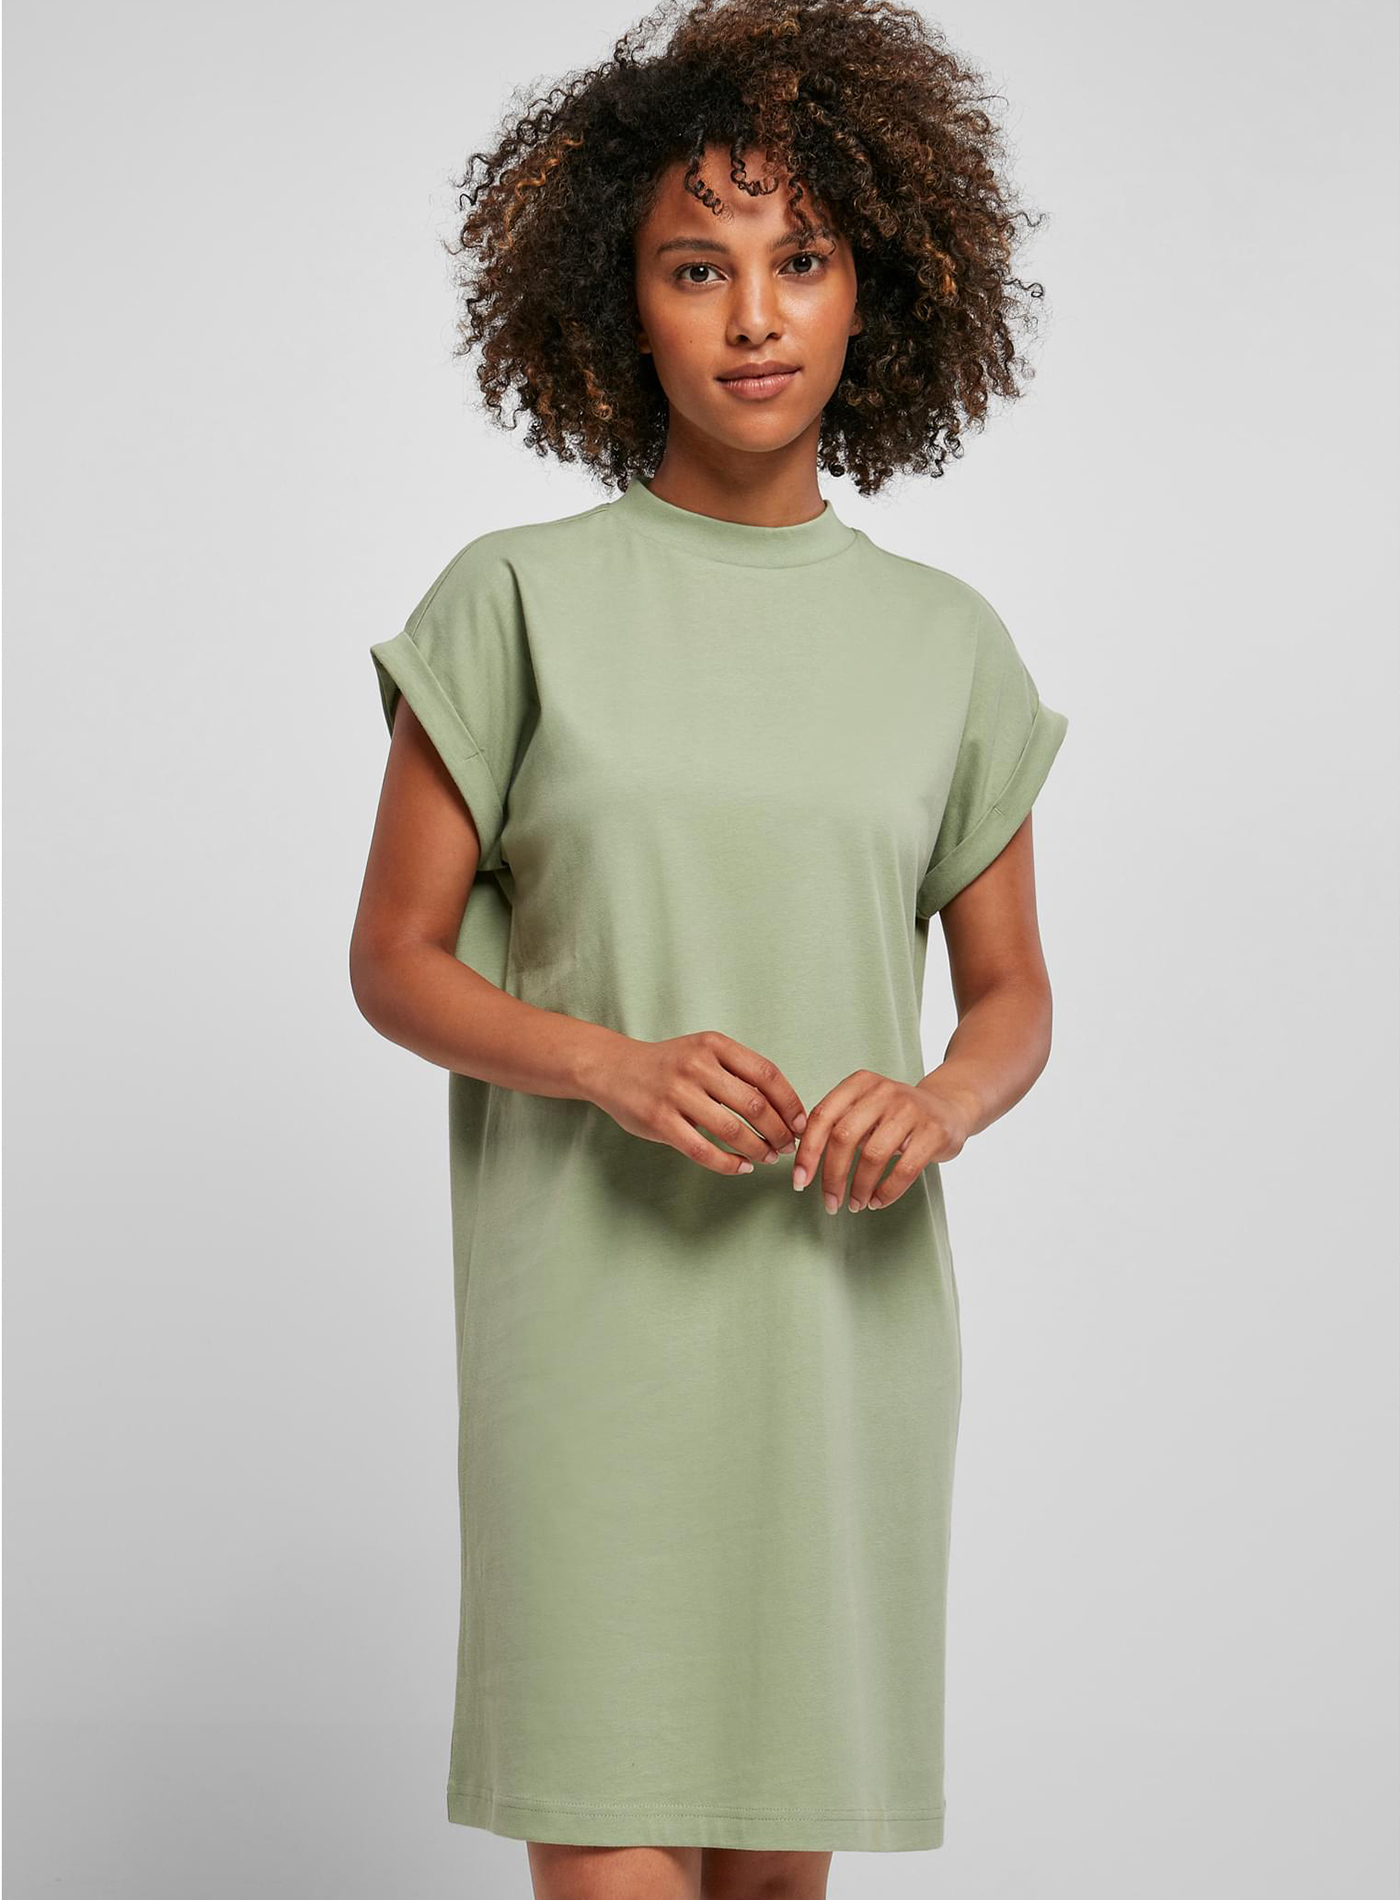 Dámské šaty Builted - Jemně zelená XS